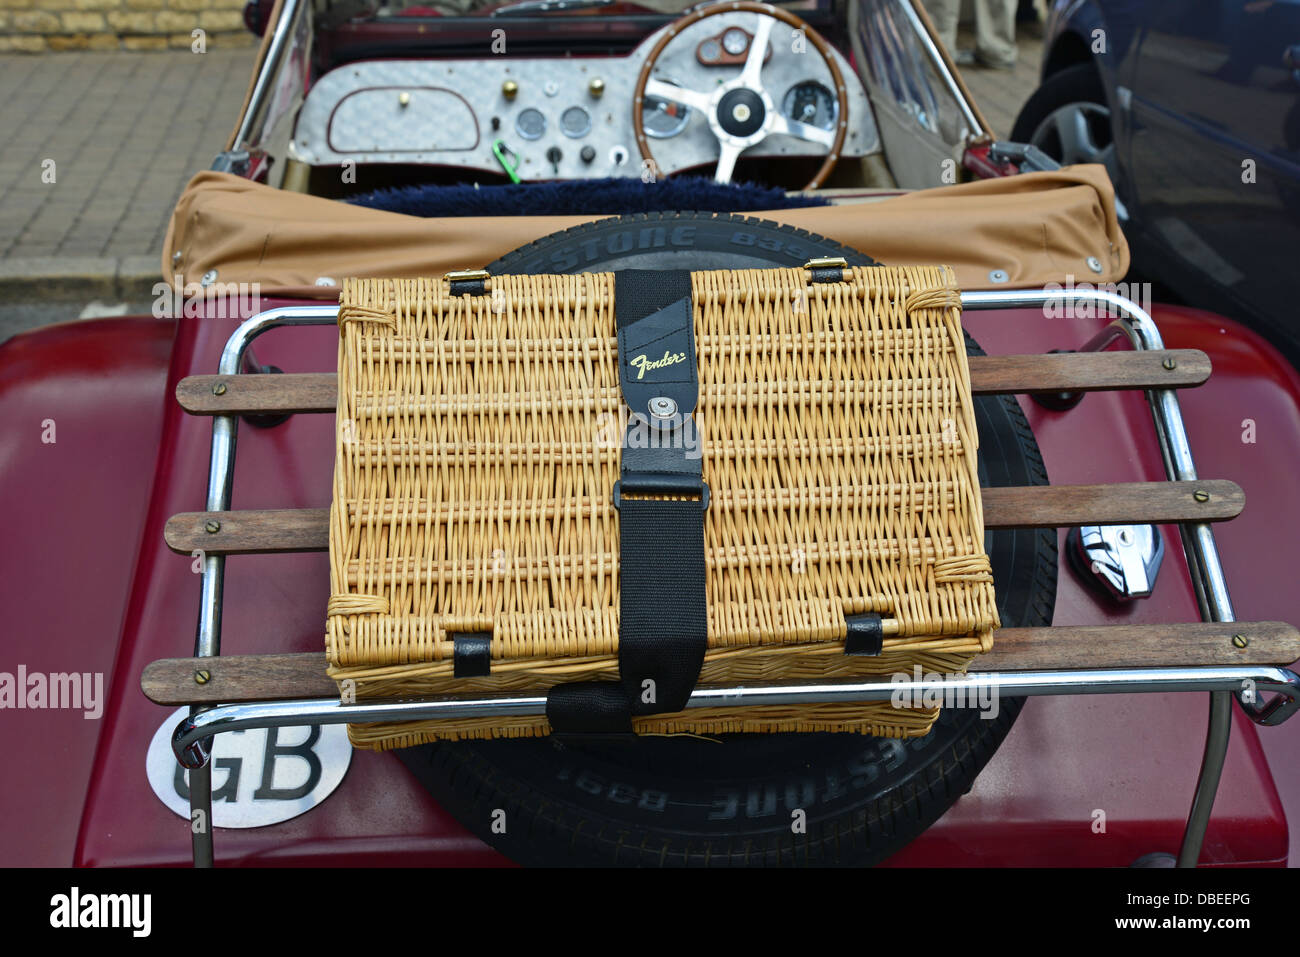 Open classique-haut car avec panier pique-nique sur rack, Bourton-on-the-water, Gloucestershire, Angleterre, Royaume-Uni Banque D'Images